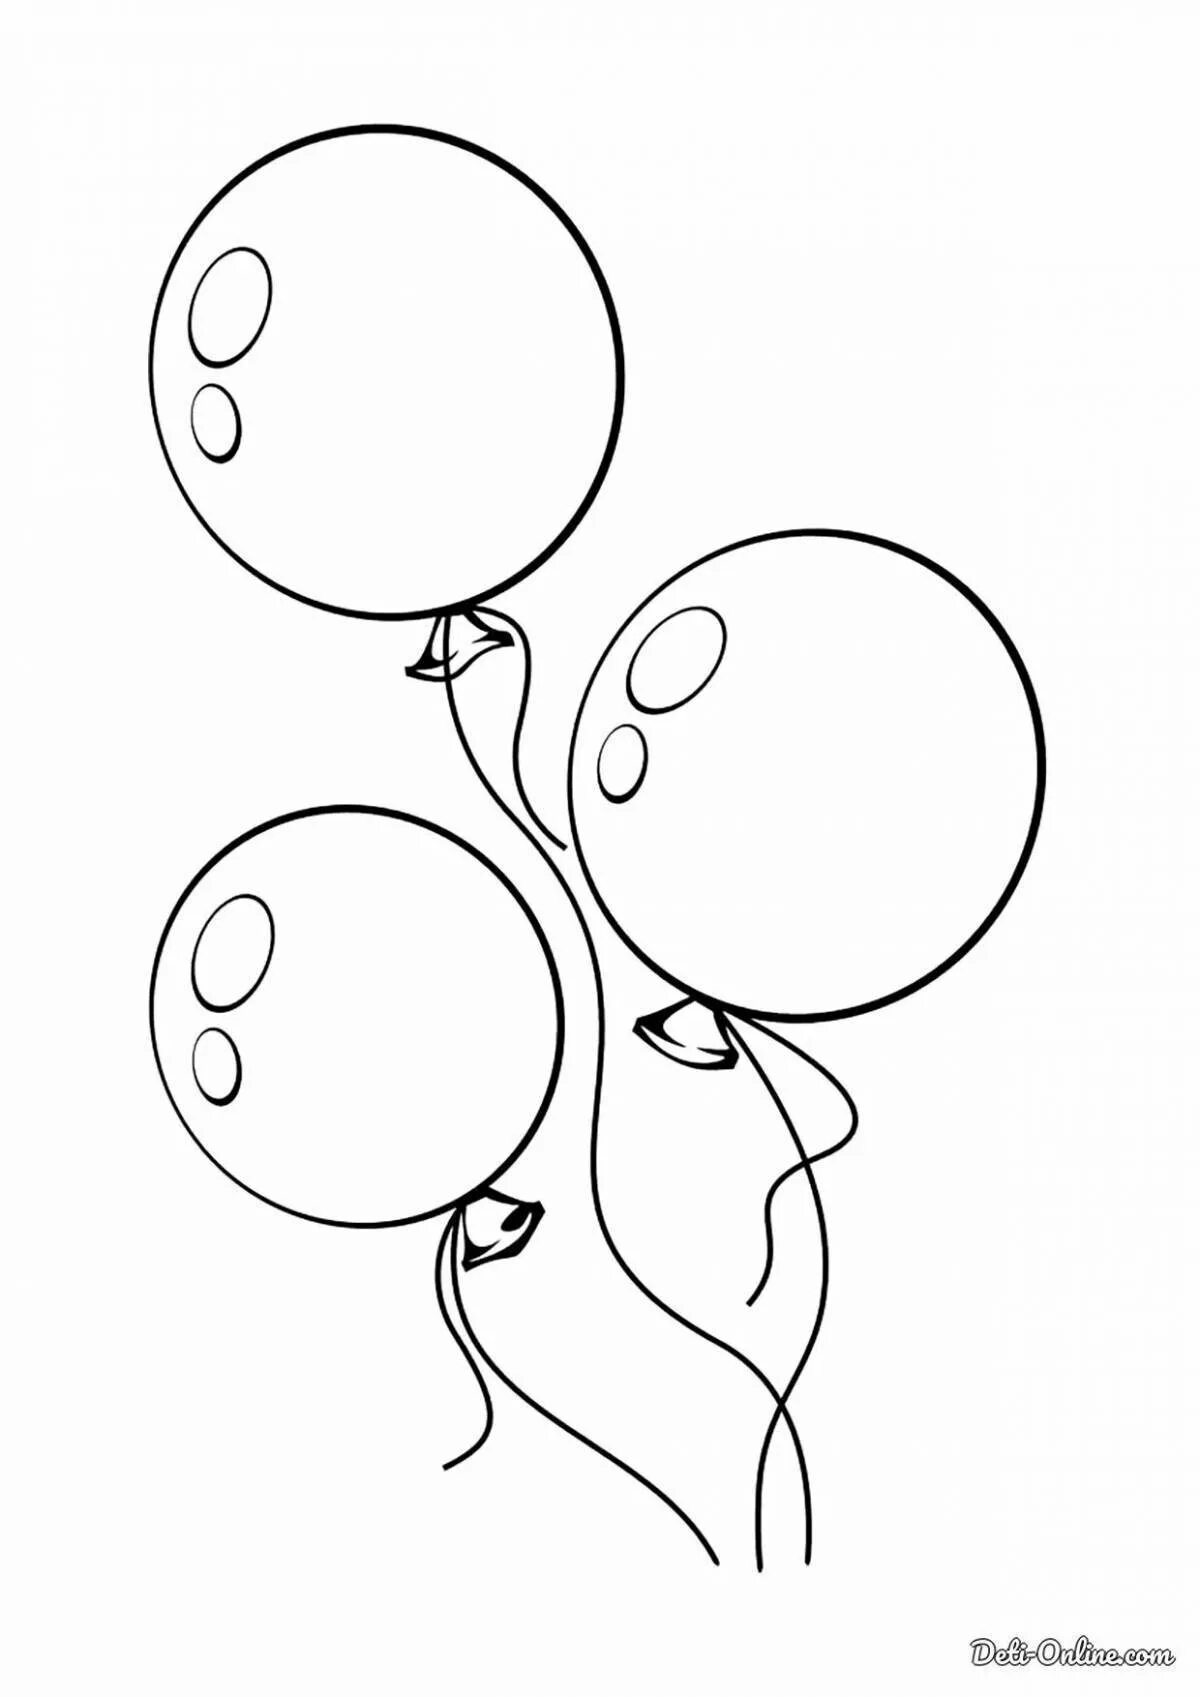 Воздушный шарик распечатать. Шарики раскраска. Воздушные шары раскраска. Воздушный шарик раскраска. Шарик раскраска для детей.